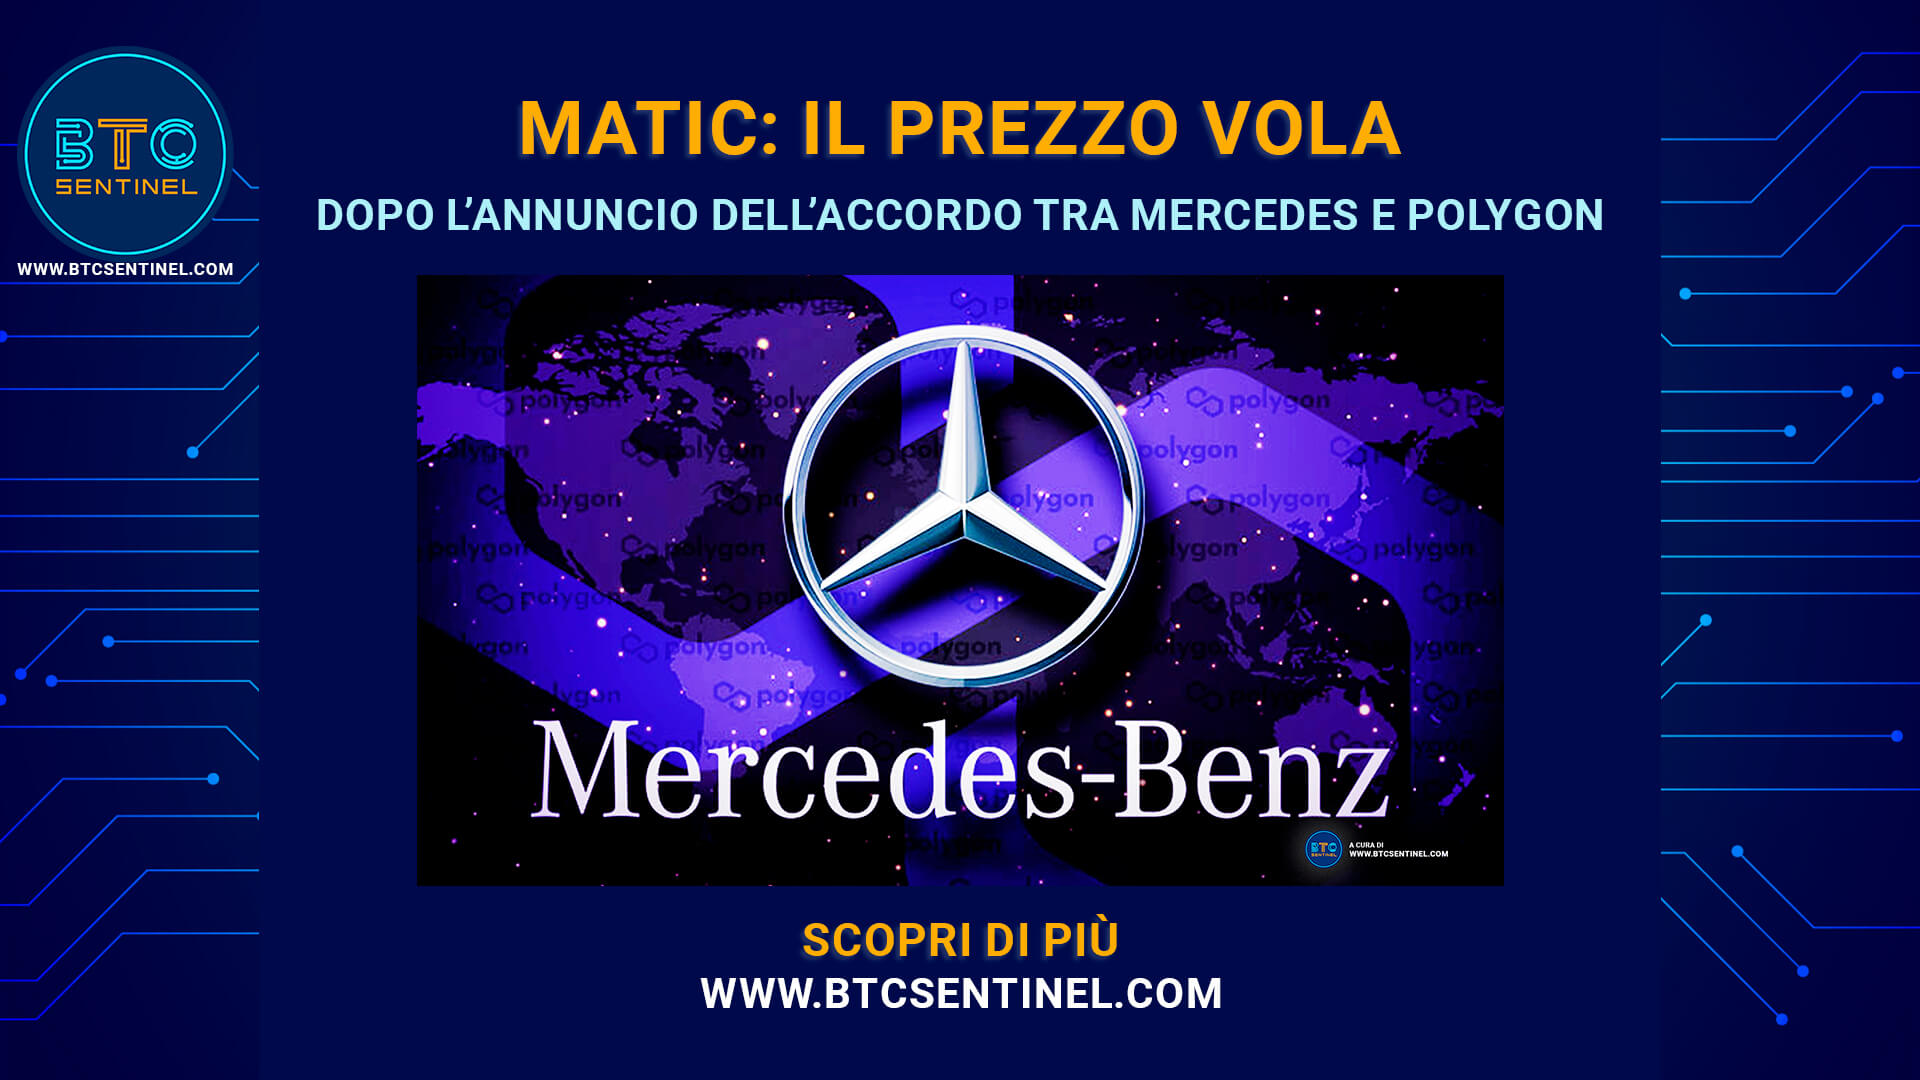 MATIC: il prezzo vola dopo l'annuncio dell'accordo Mercedes Benz - Polygon